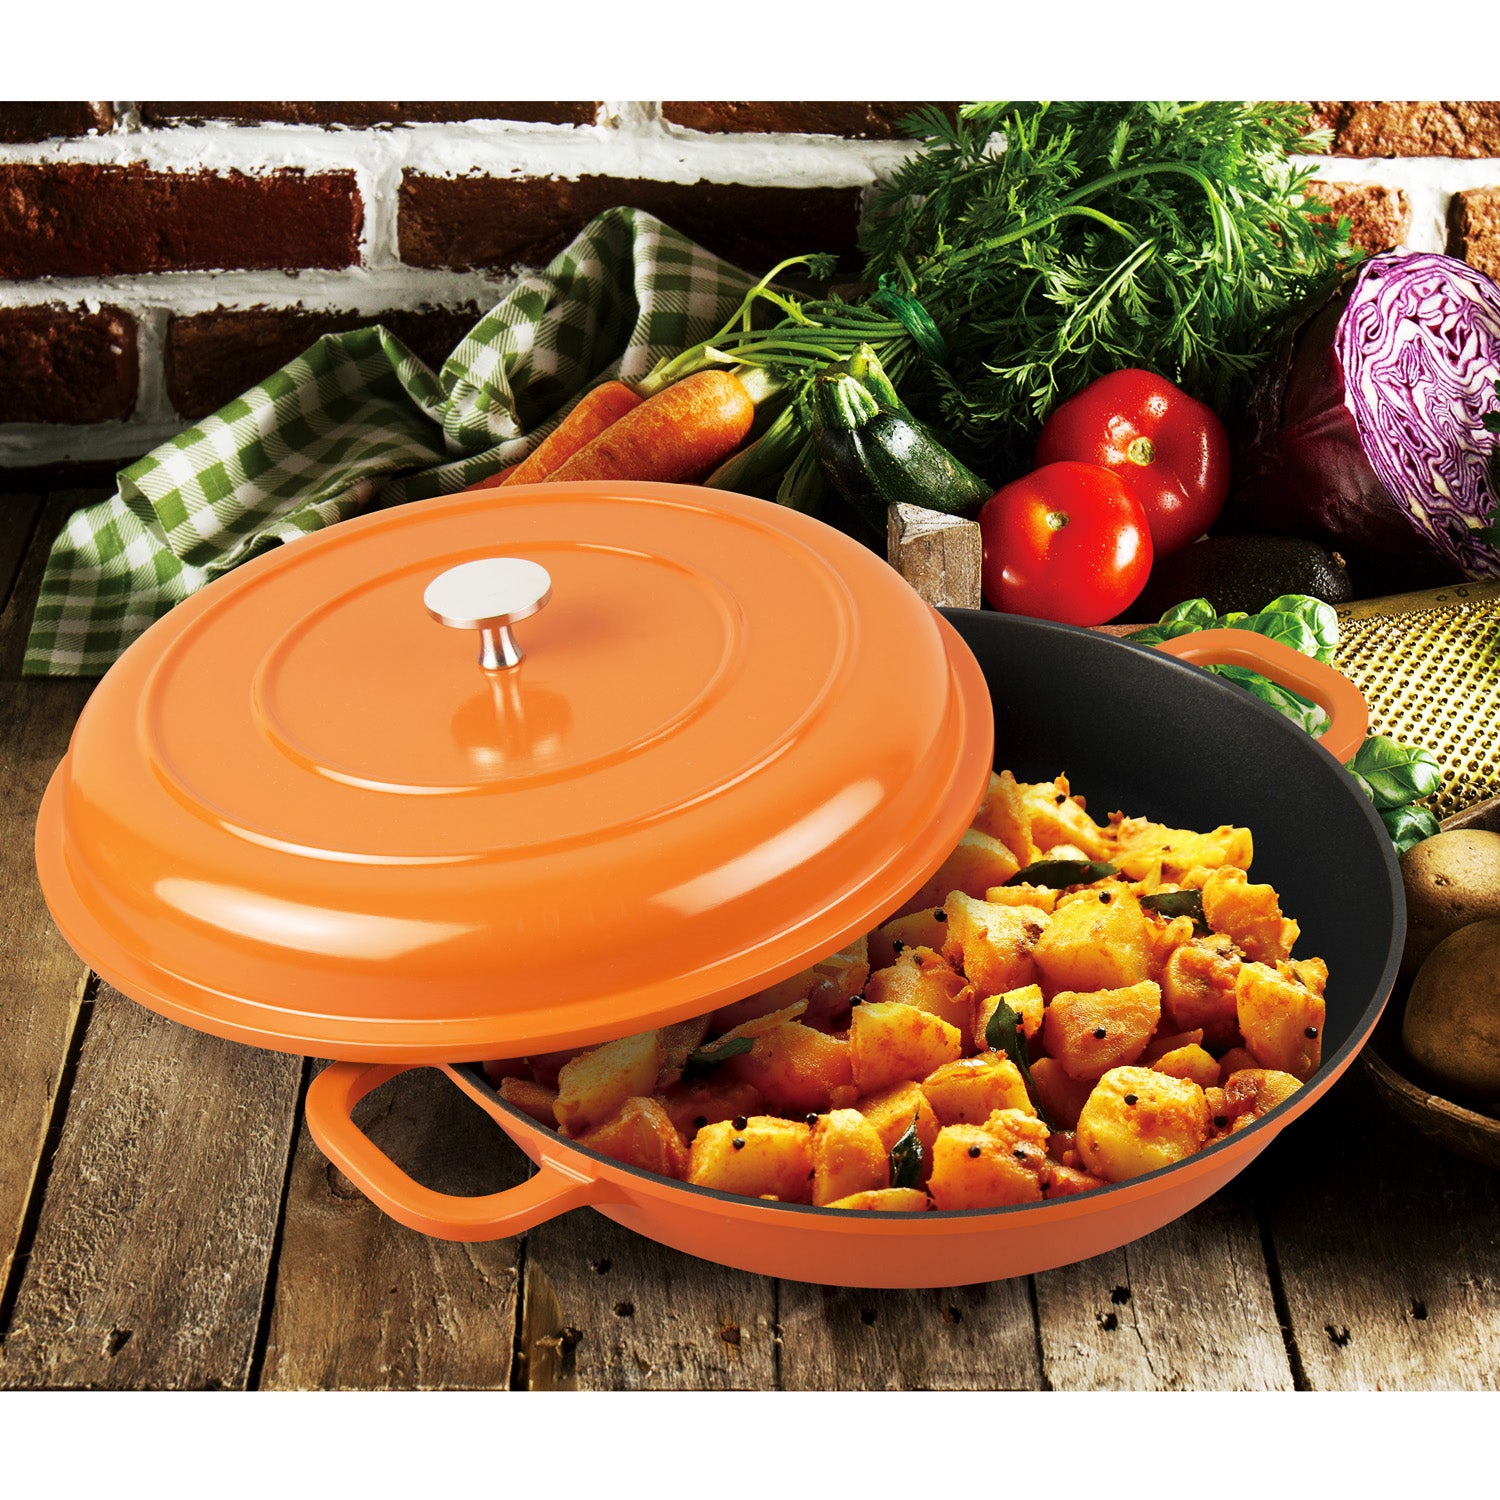 Round Dutch Oven Casserole Dish - Orange Cast Iron 26cm / 10.2 inch